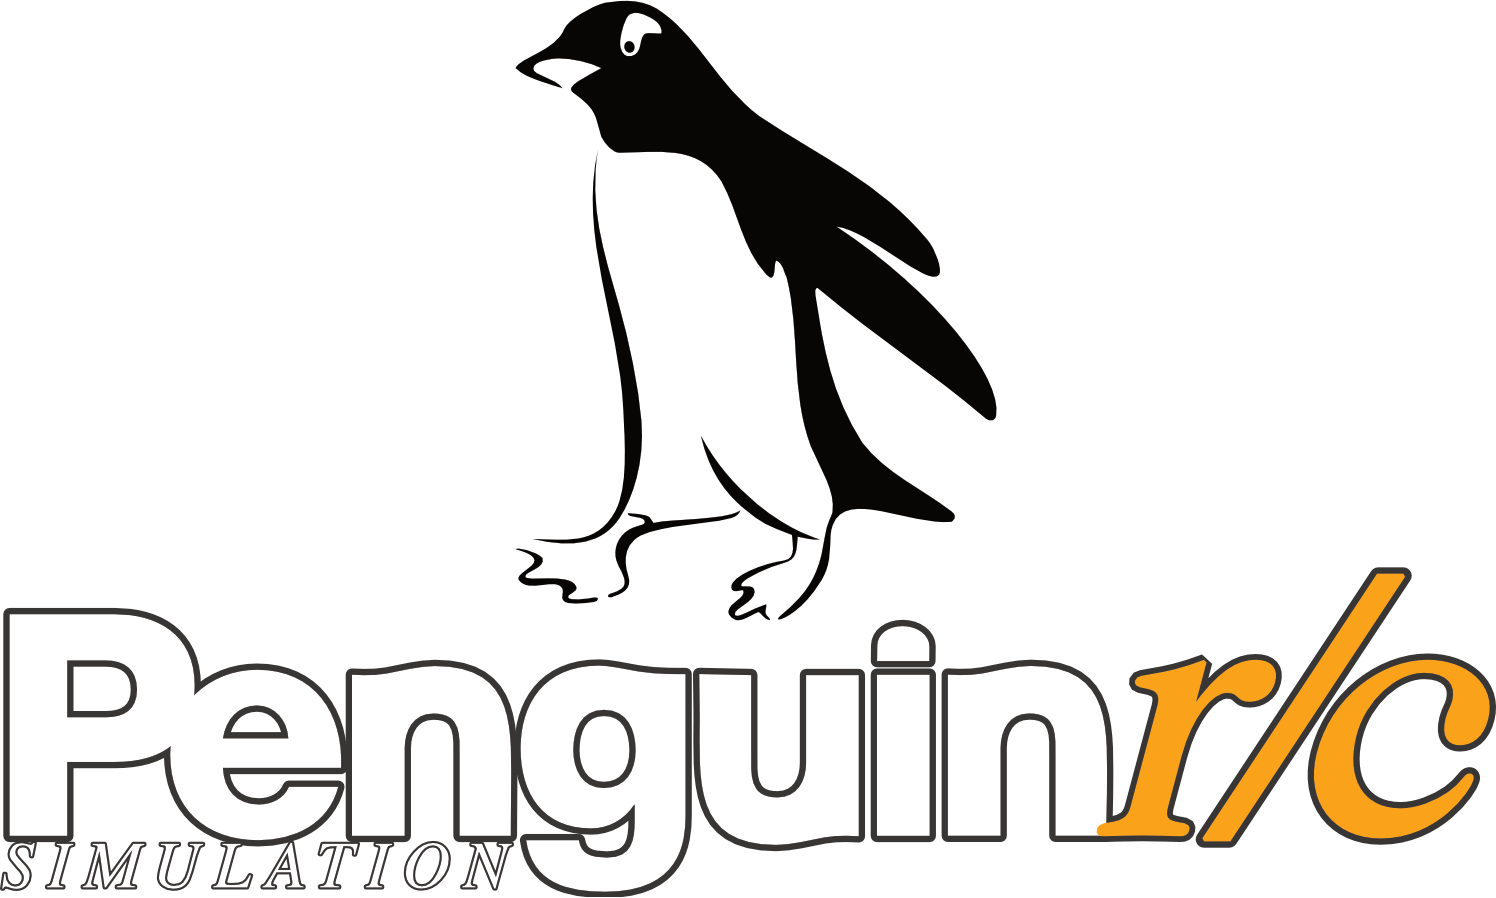 Penguin r/c